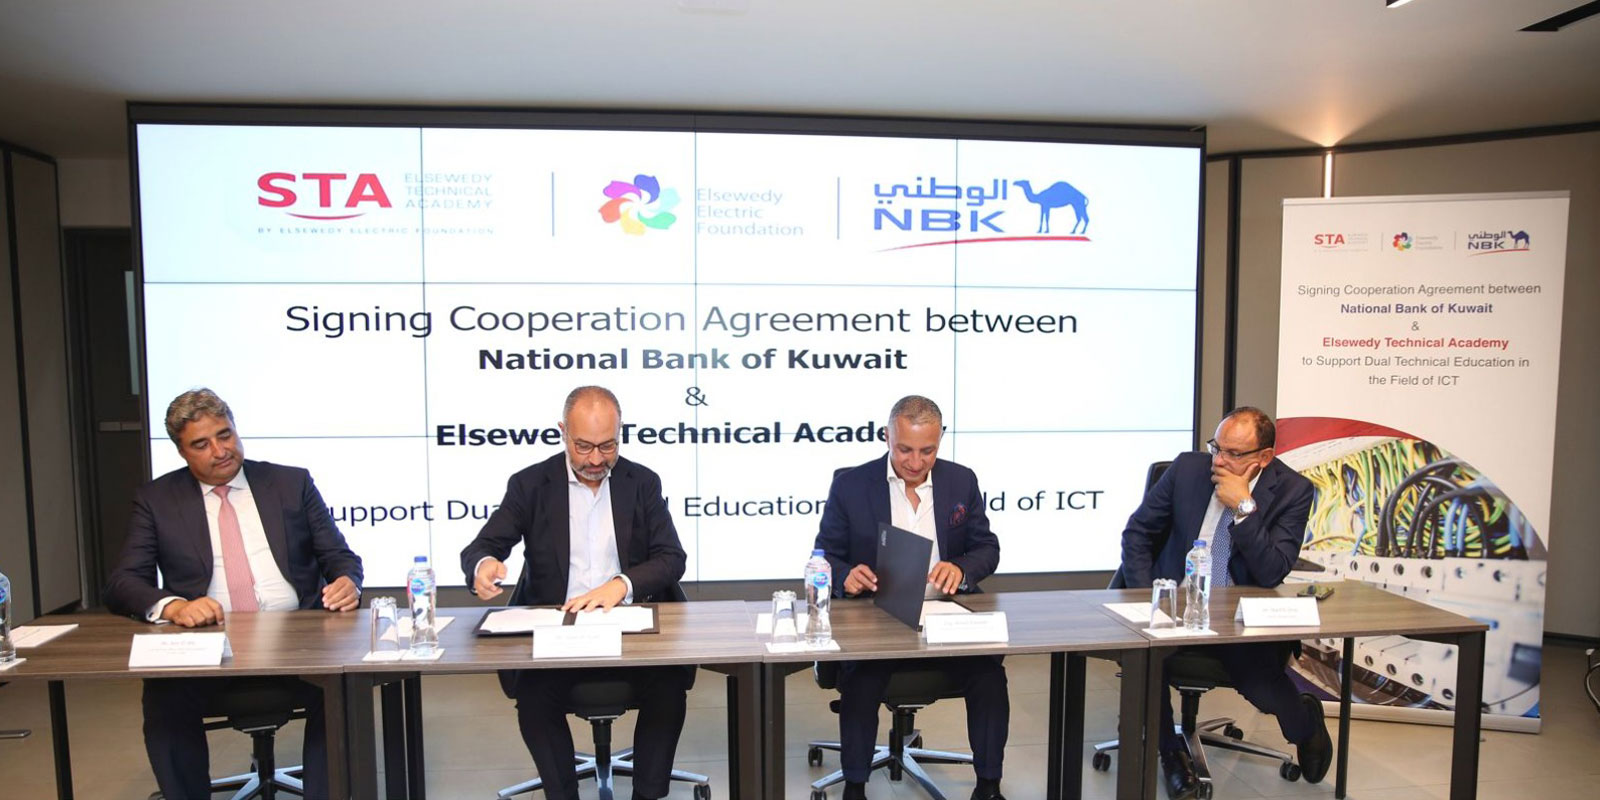 أكاديمية السويدي الفنية توقع اتفاقية تعاون مع بنك الكويت الوطني – مصر  لرعاية طلاب الأكاديمية في مجال تكنولوجيا المعلومات والاتصالات